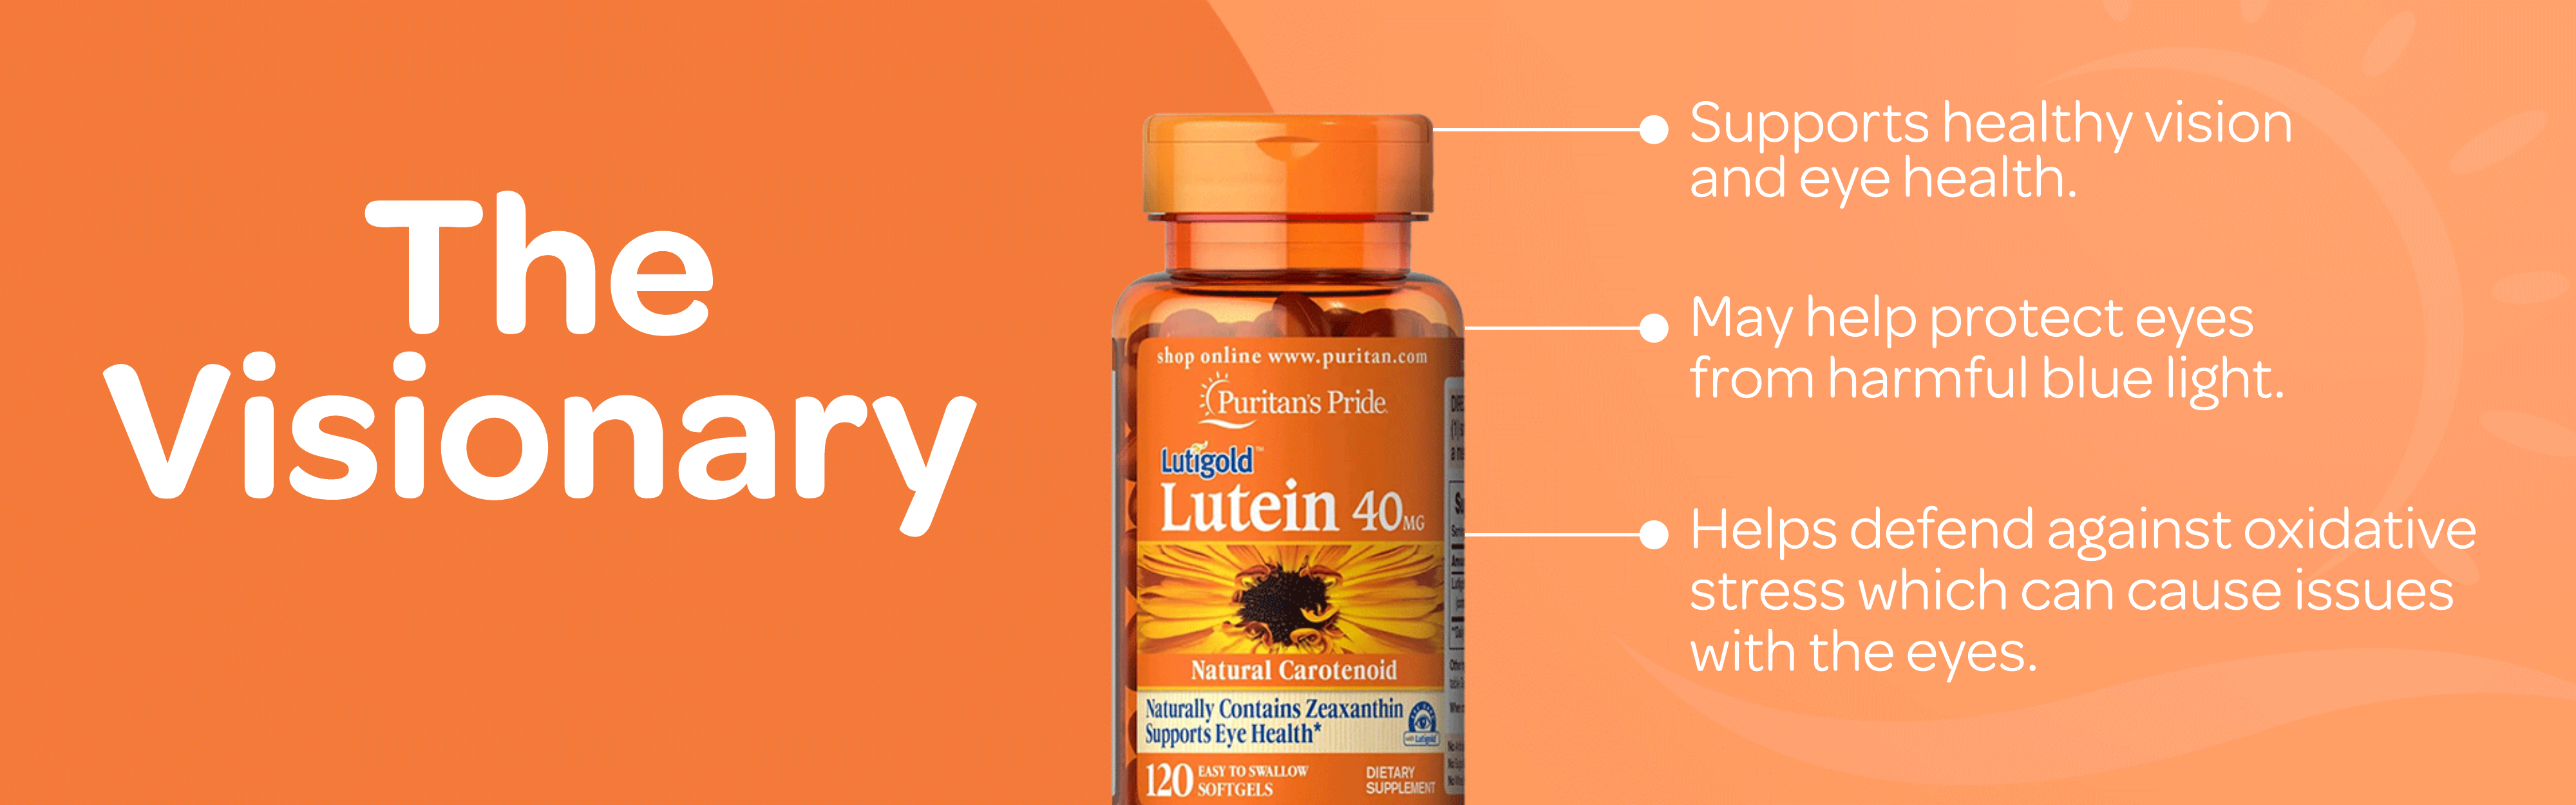 Lutein supplement benefits banner